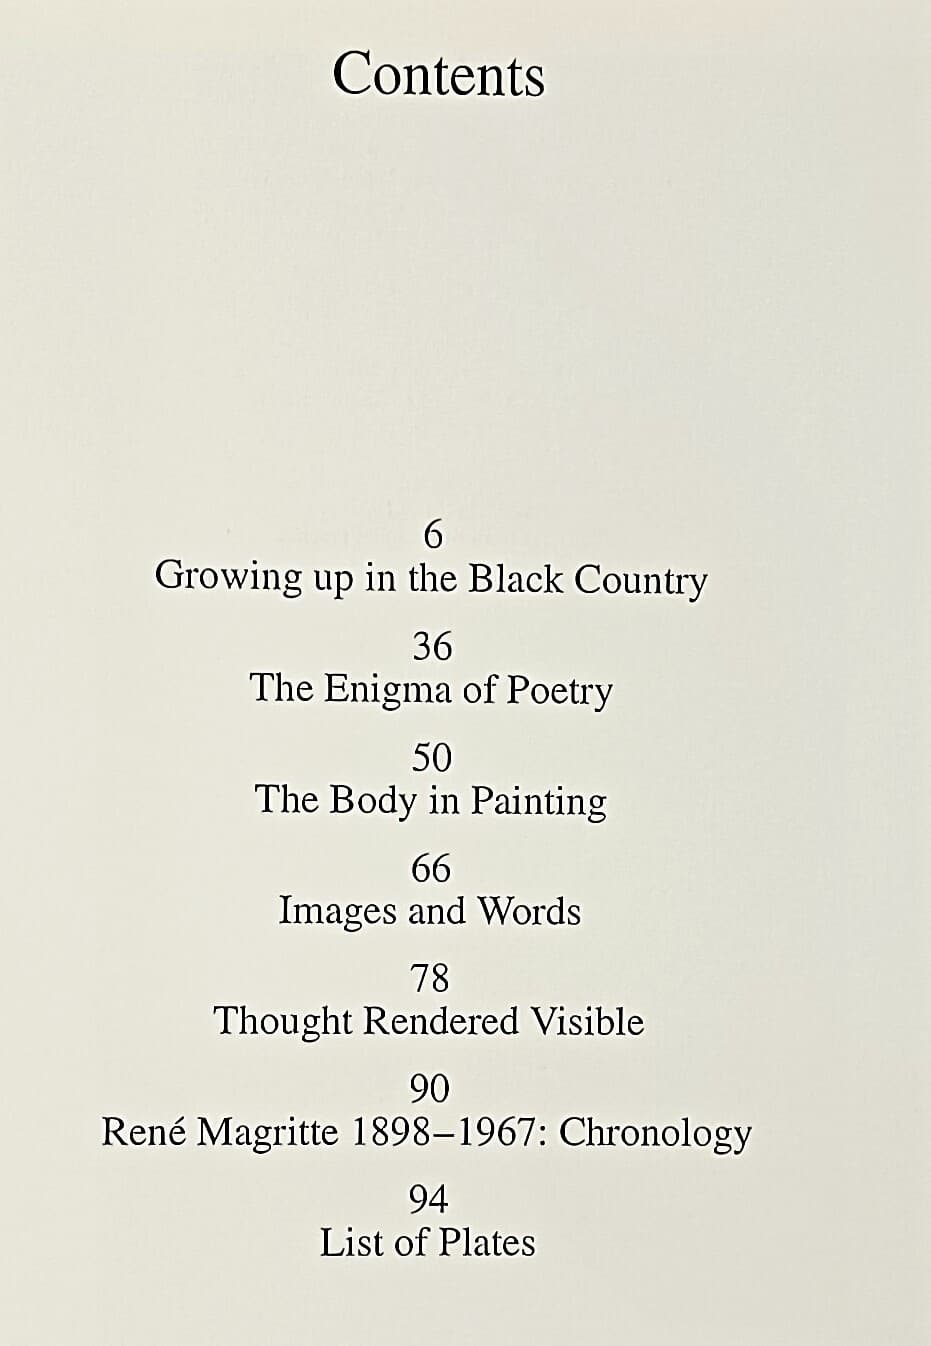 르네 마그리트(MAGRITTE) -1898~1967-서양화 미술도록-수입서적-185/230/8, 96쪽-